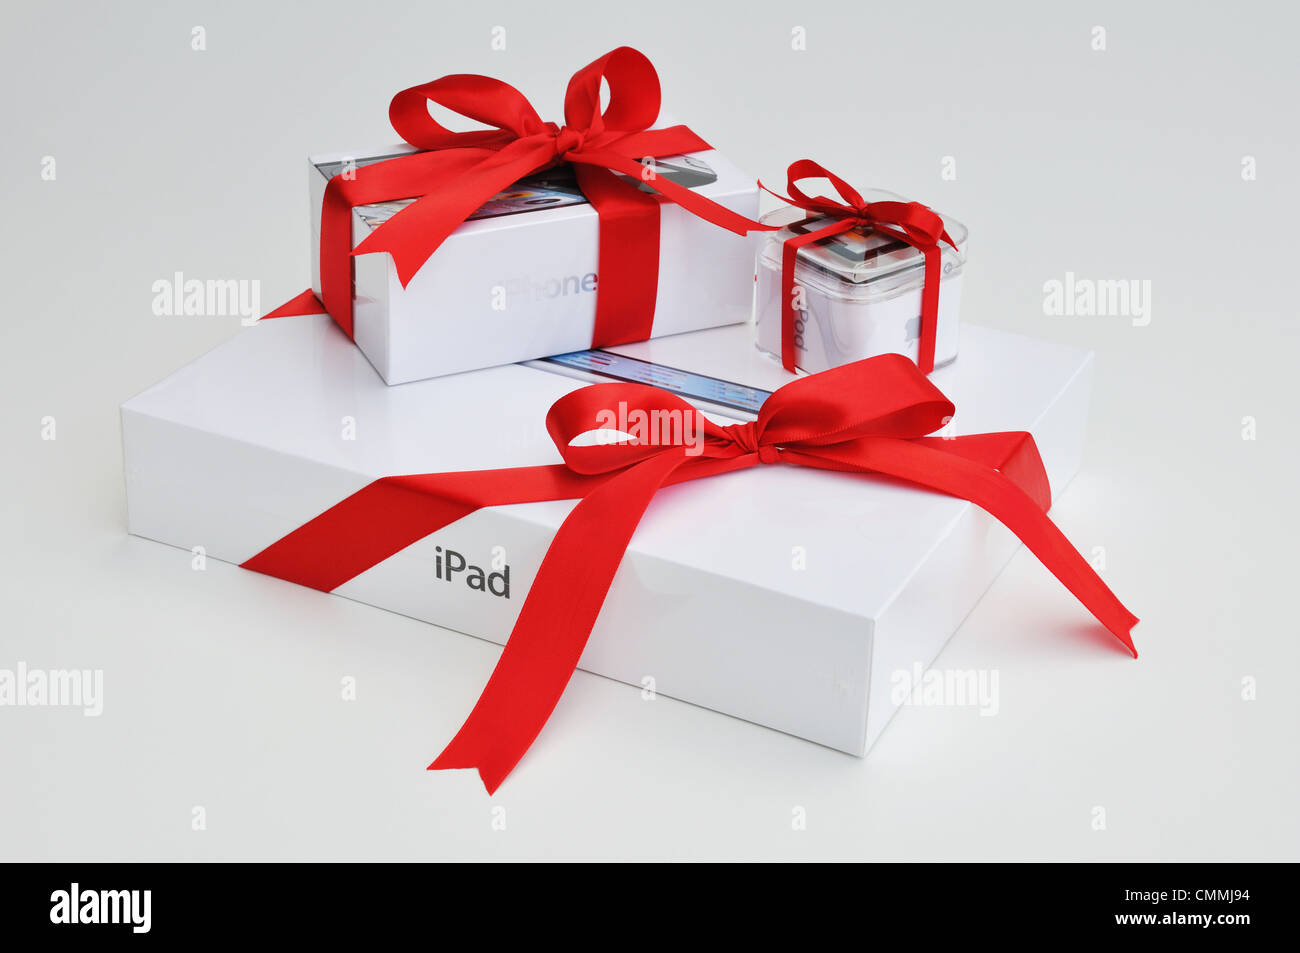 Perfect gift: iPod Nano, iPhone, & iPad Stock Photo